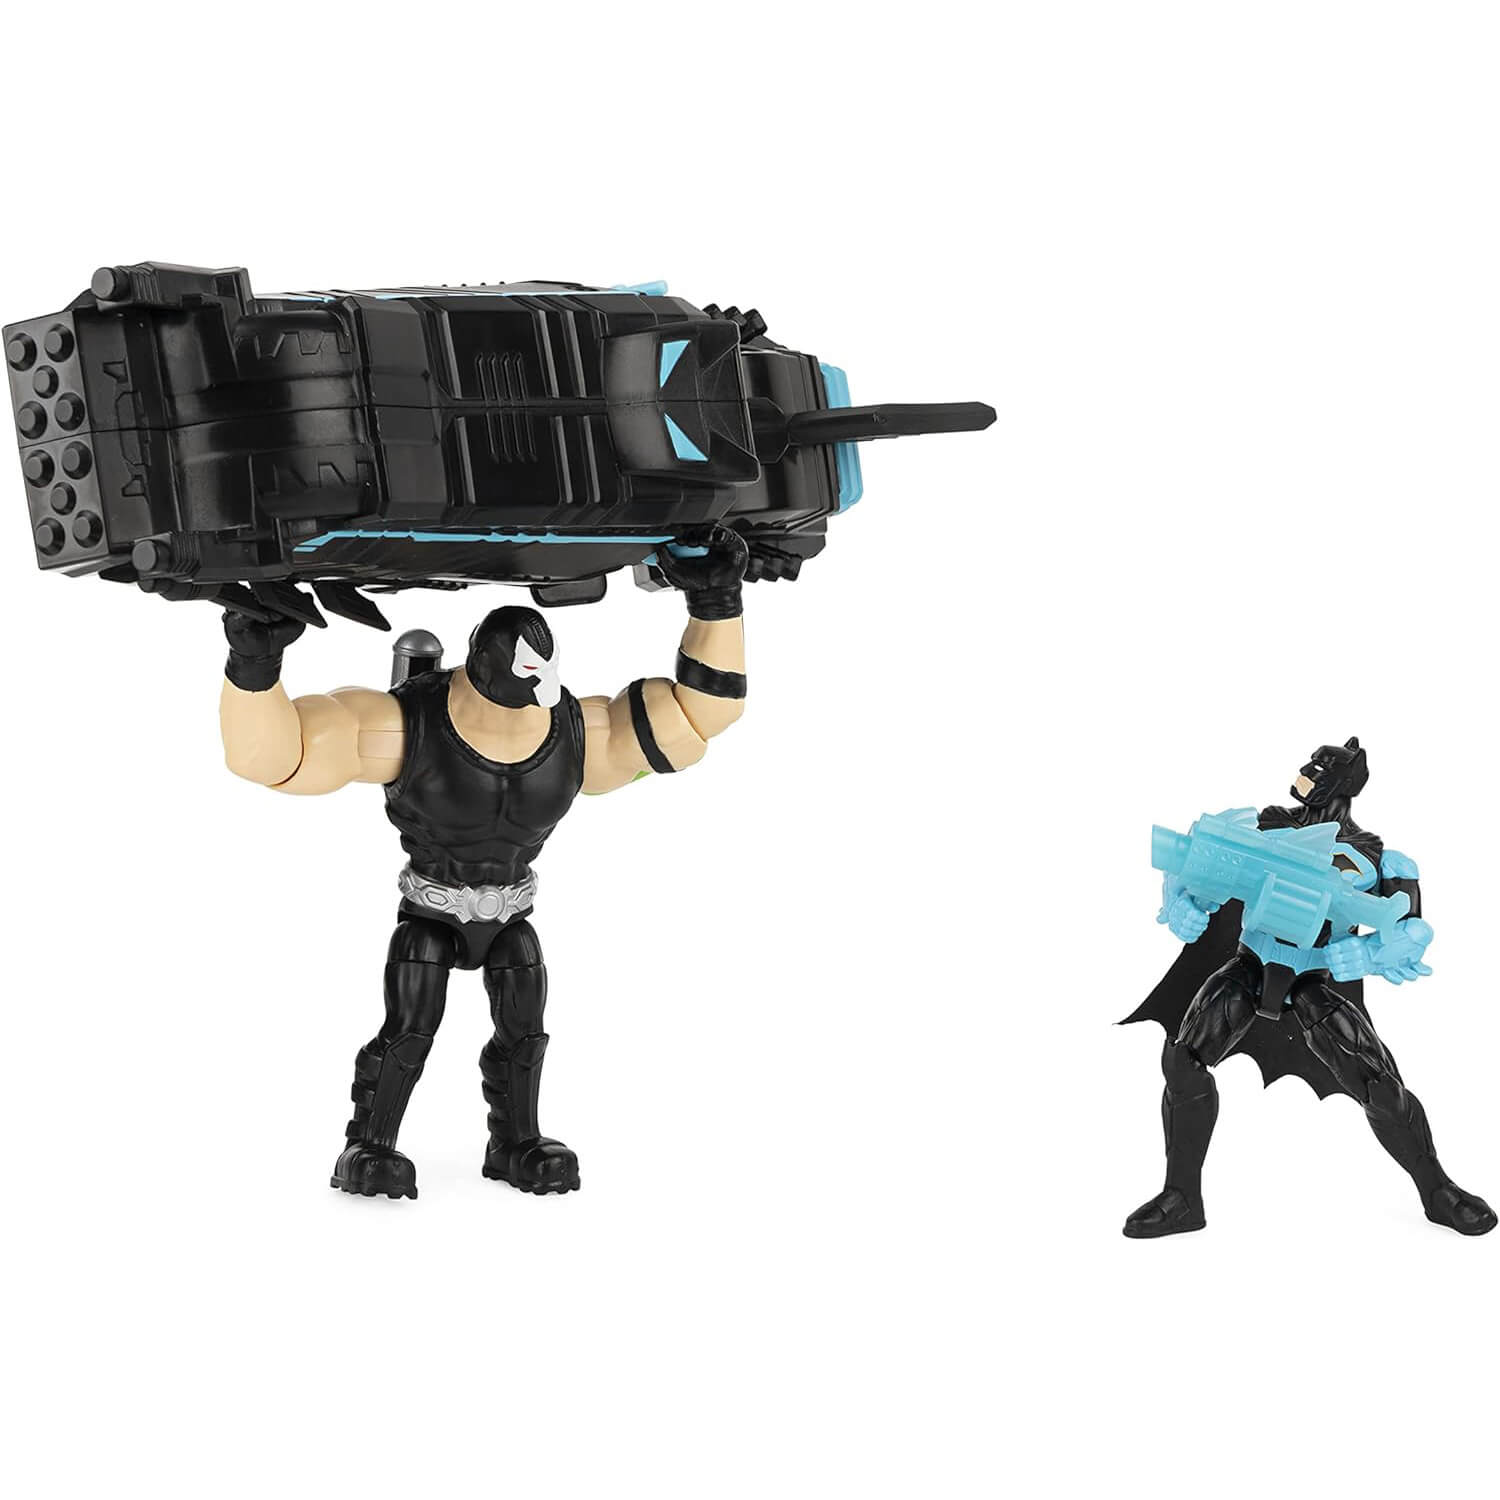 Bane throwing Moto-Tank at Batman